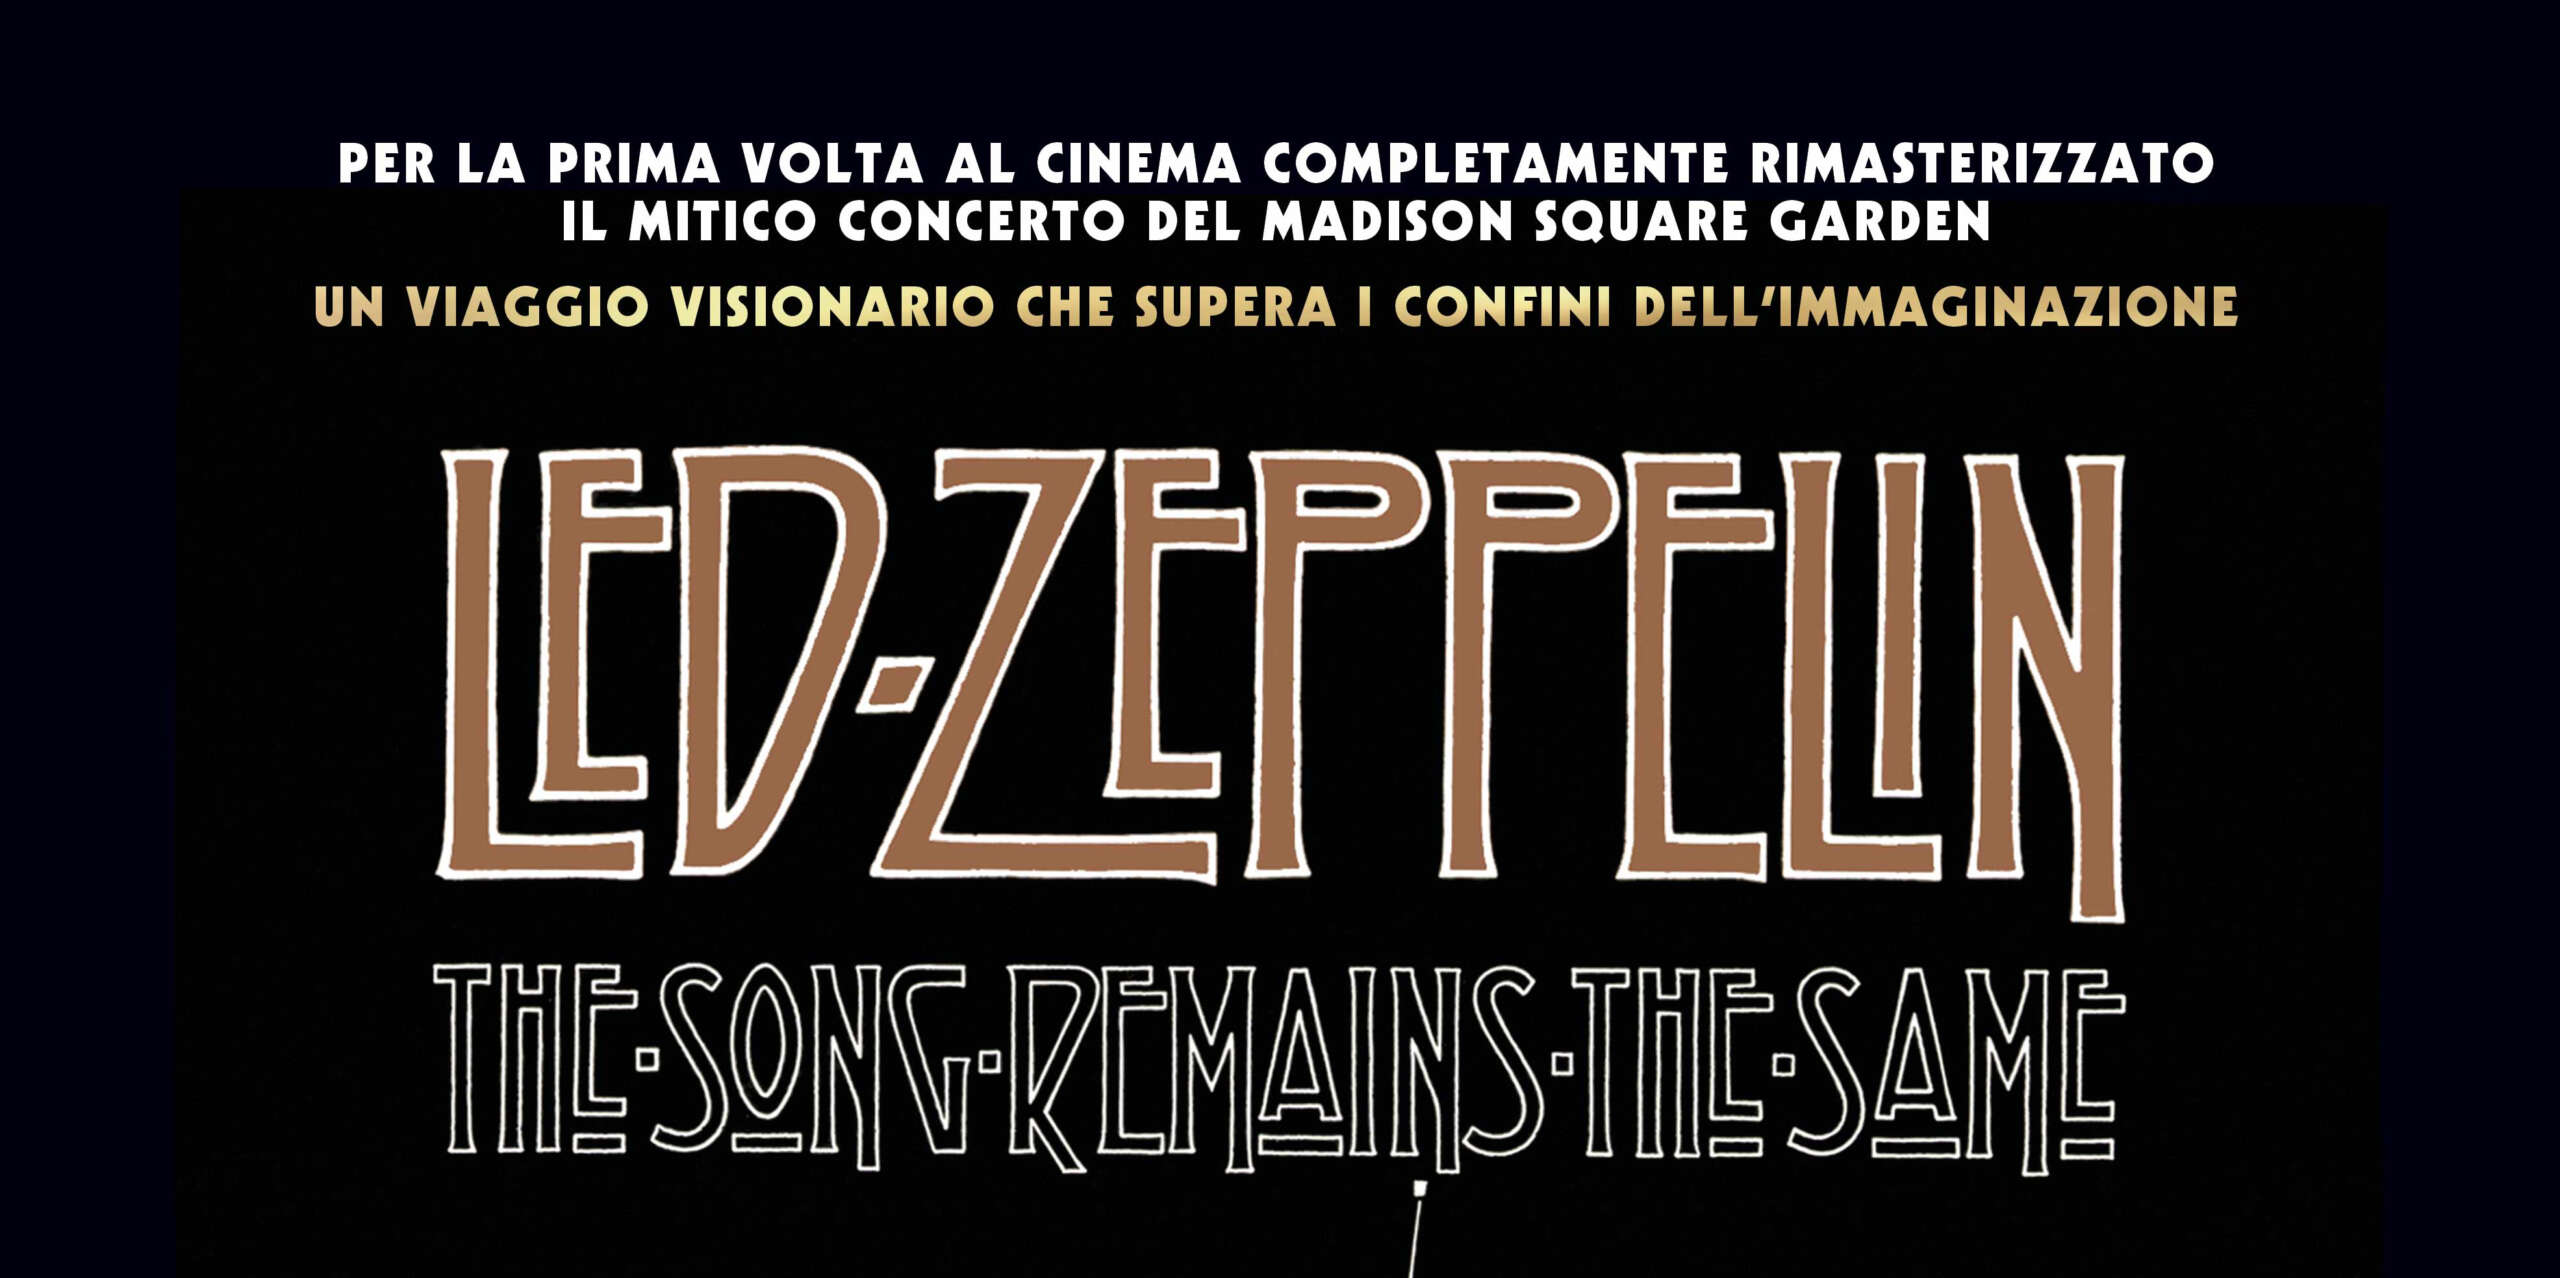 LED ZEPPELIN – tornano al cinema con “The Song Remains The Same” in versione rimasterizzata solo il 25, 26, 27 marzo